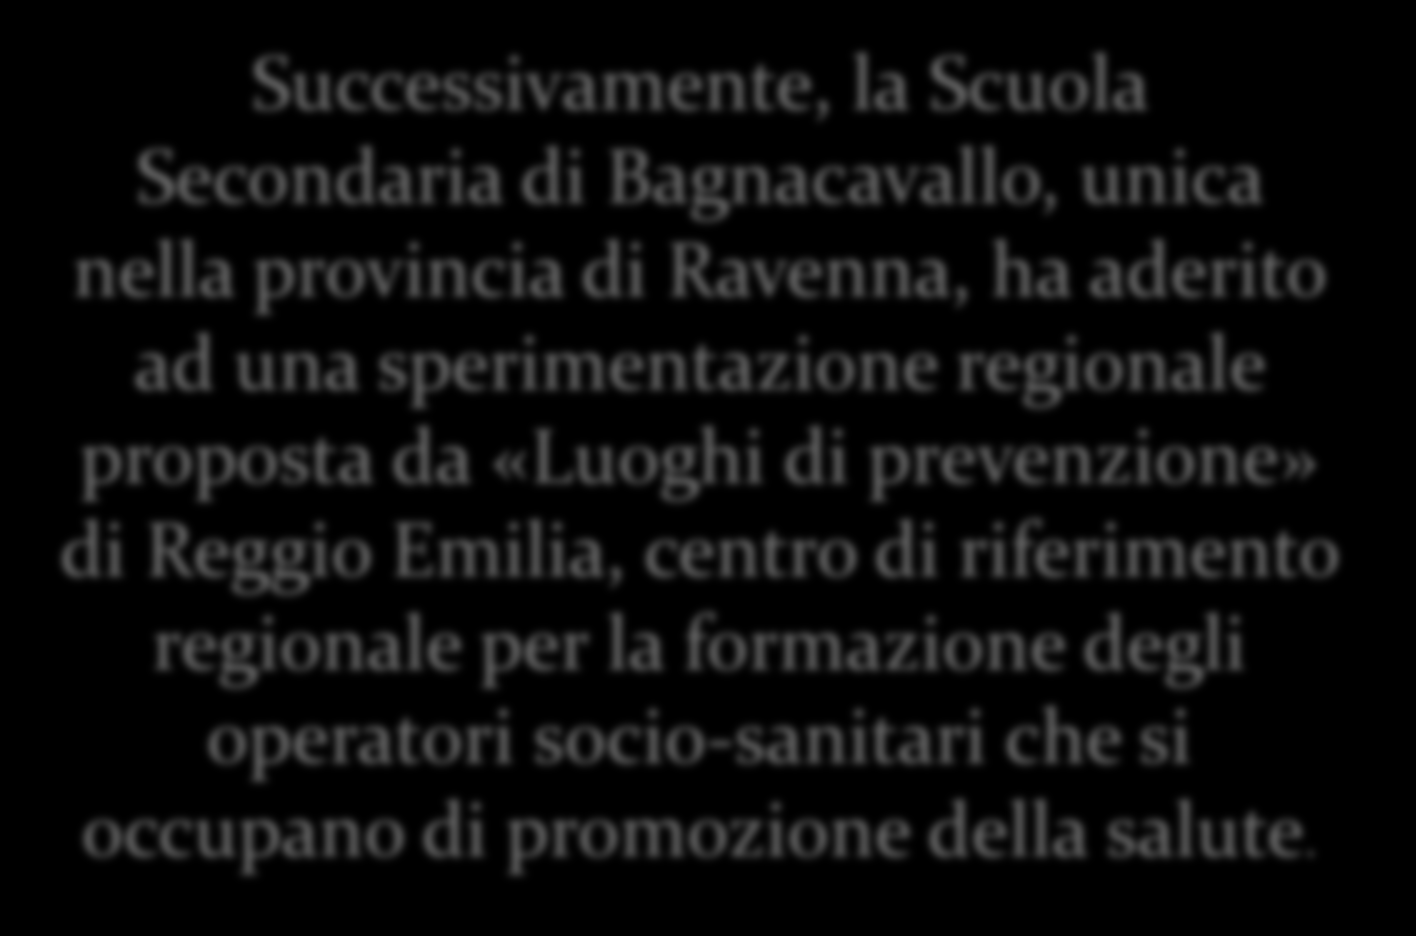 Successivamente, la Scuola Secondaria di Bagnacavallo, unica nella provincia di Ravenna, ha aderito ad una sperimentazione regionale proposta da «Luoghi di